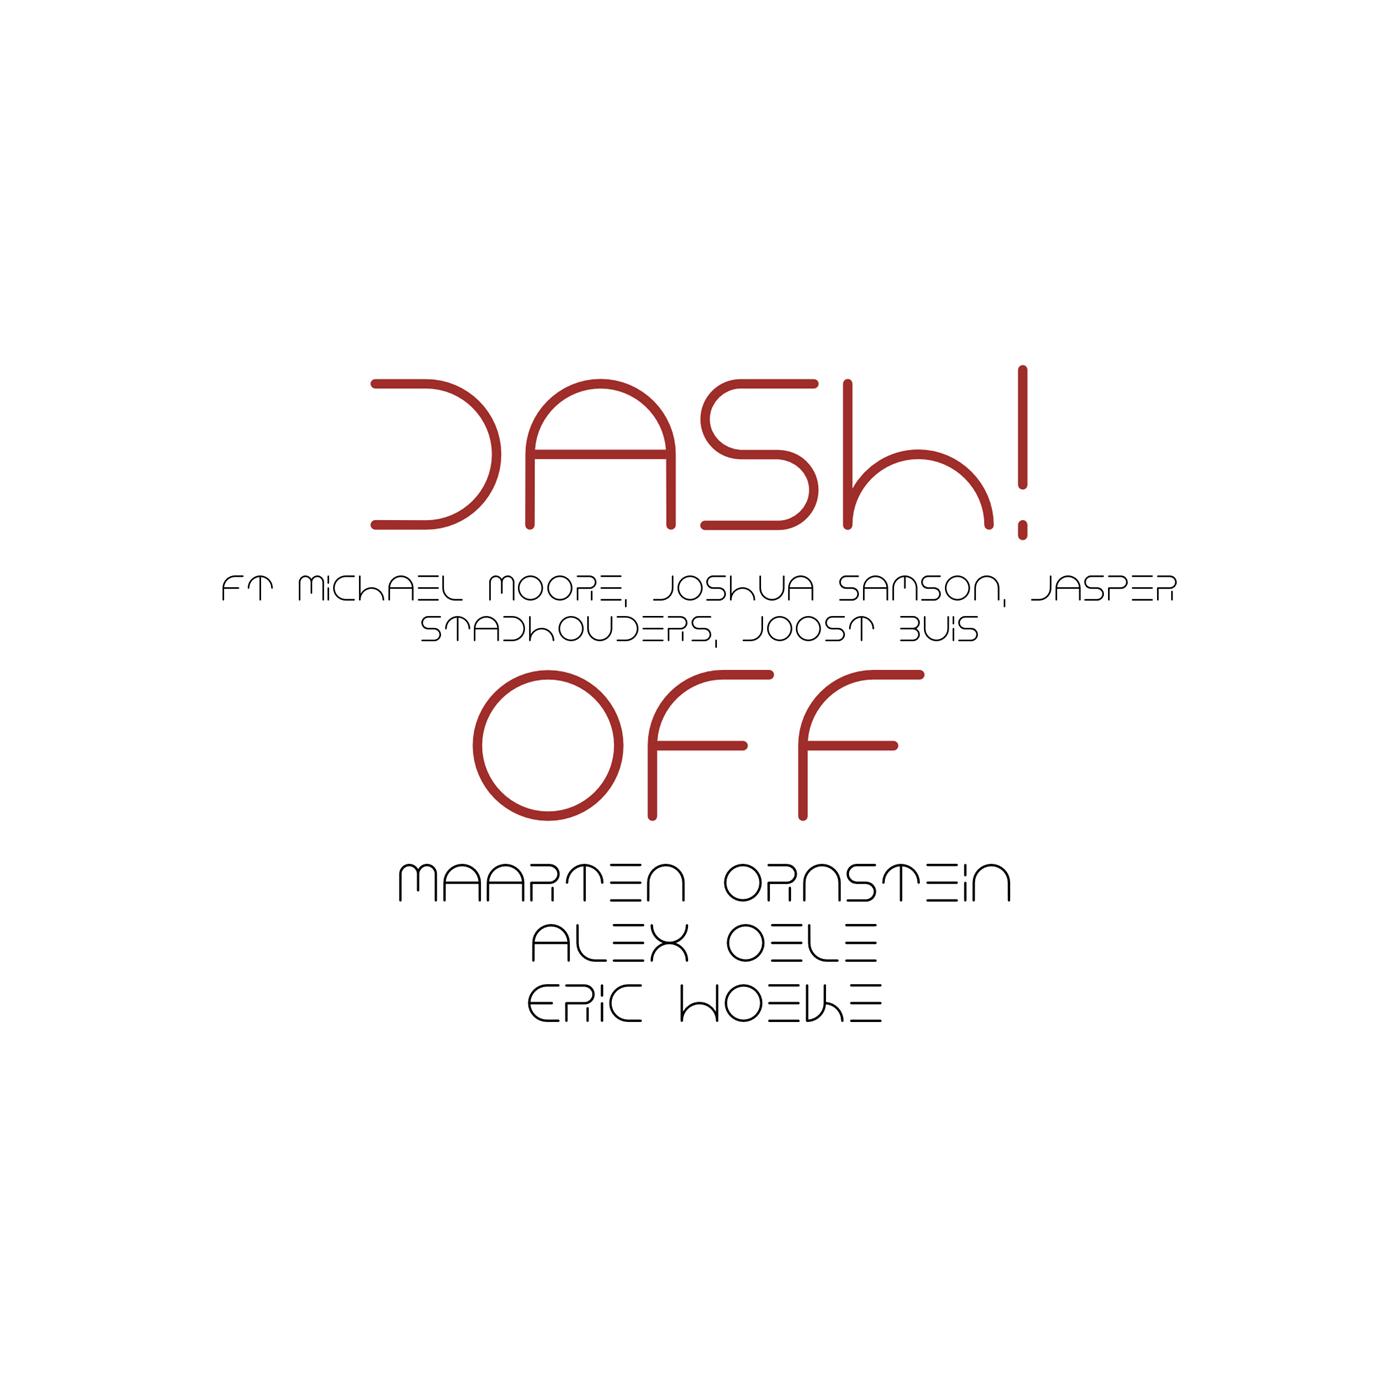 DASH! Off